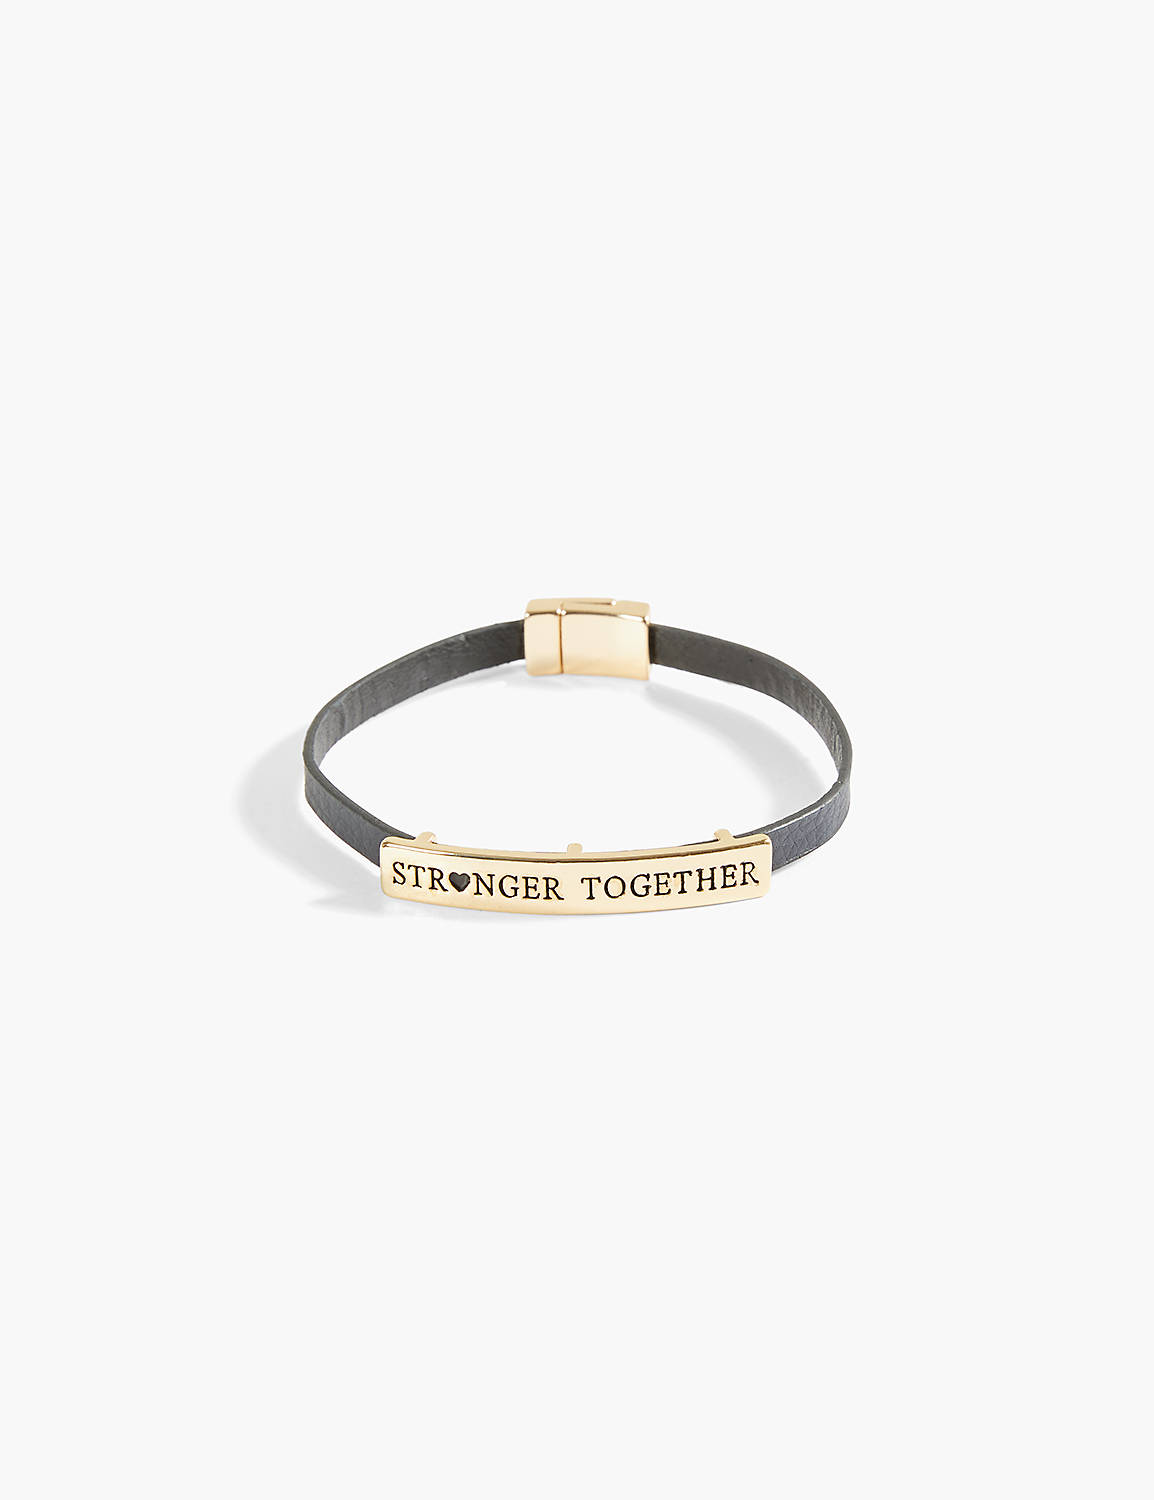 Stronger Together Bracelet Product Image 1